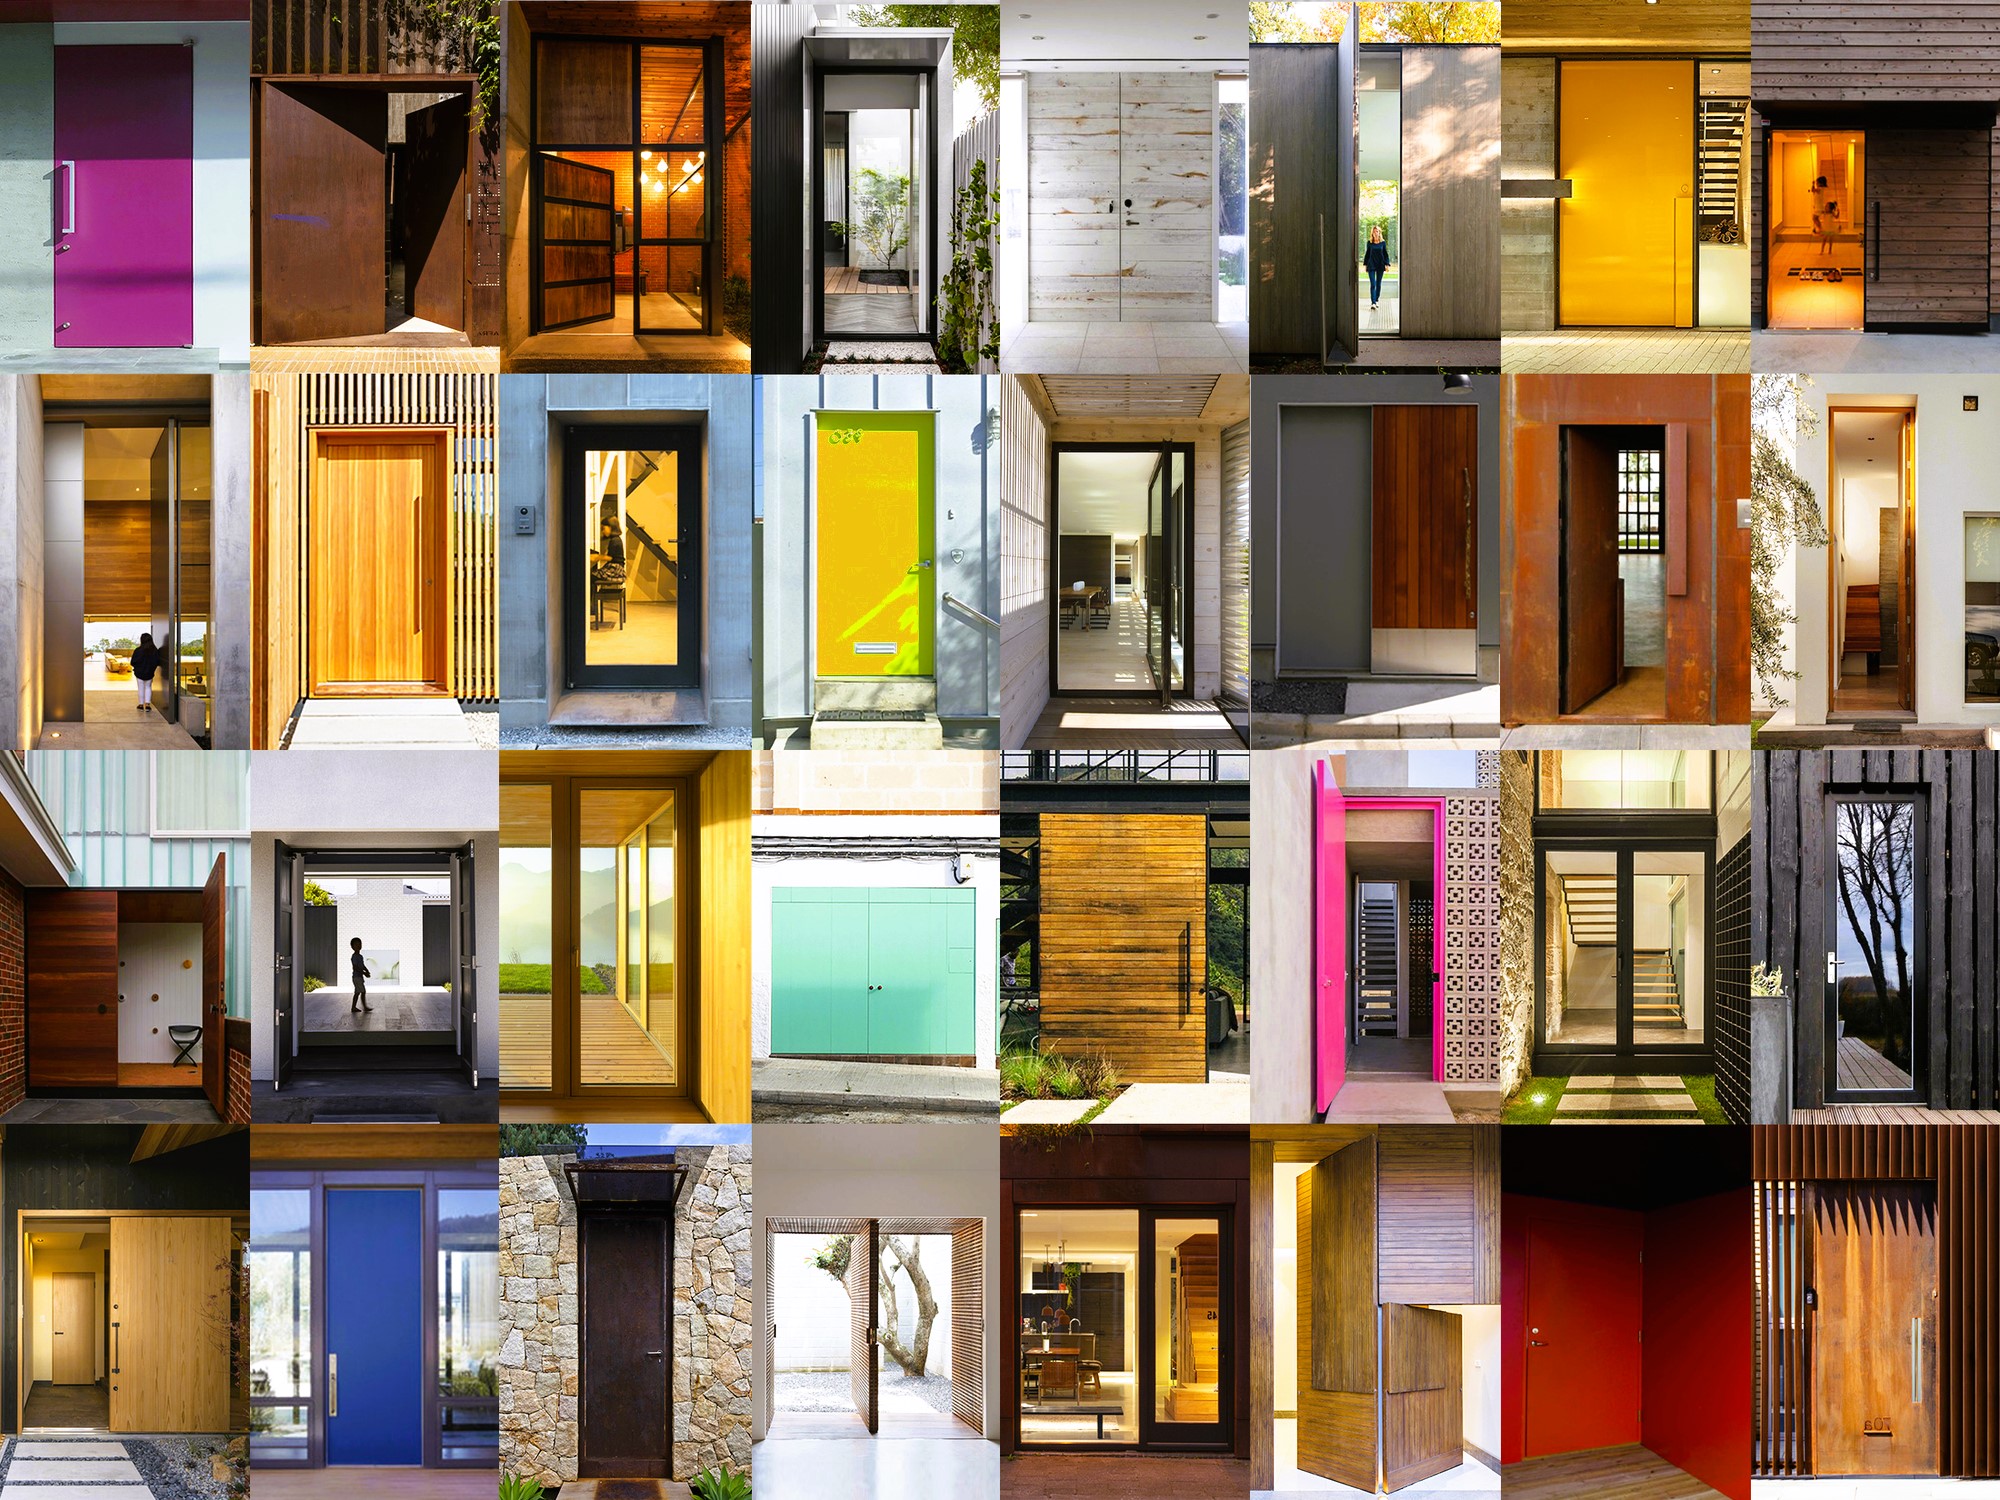 Examples of doors